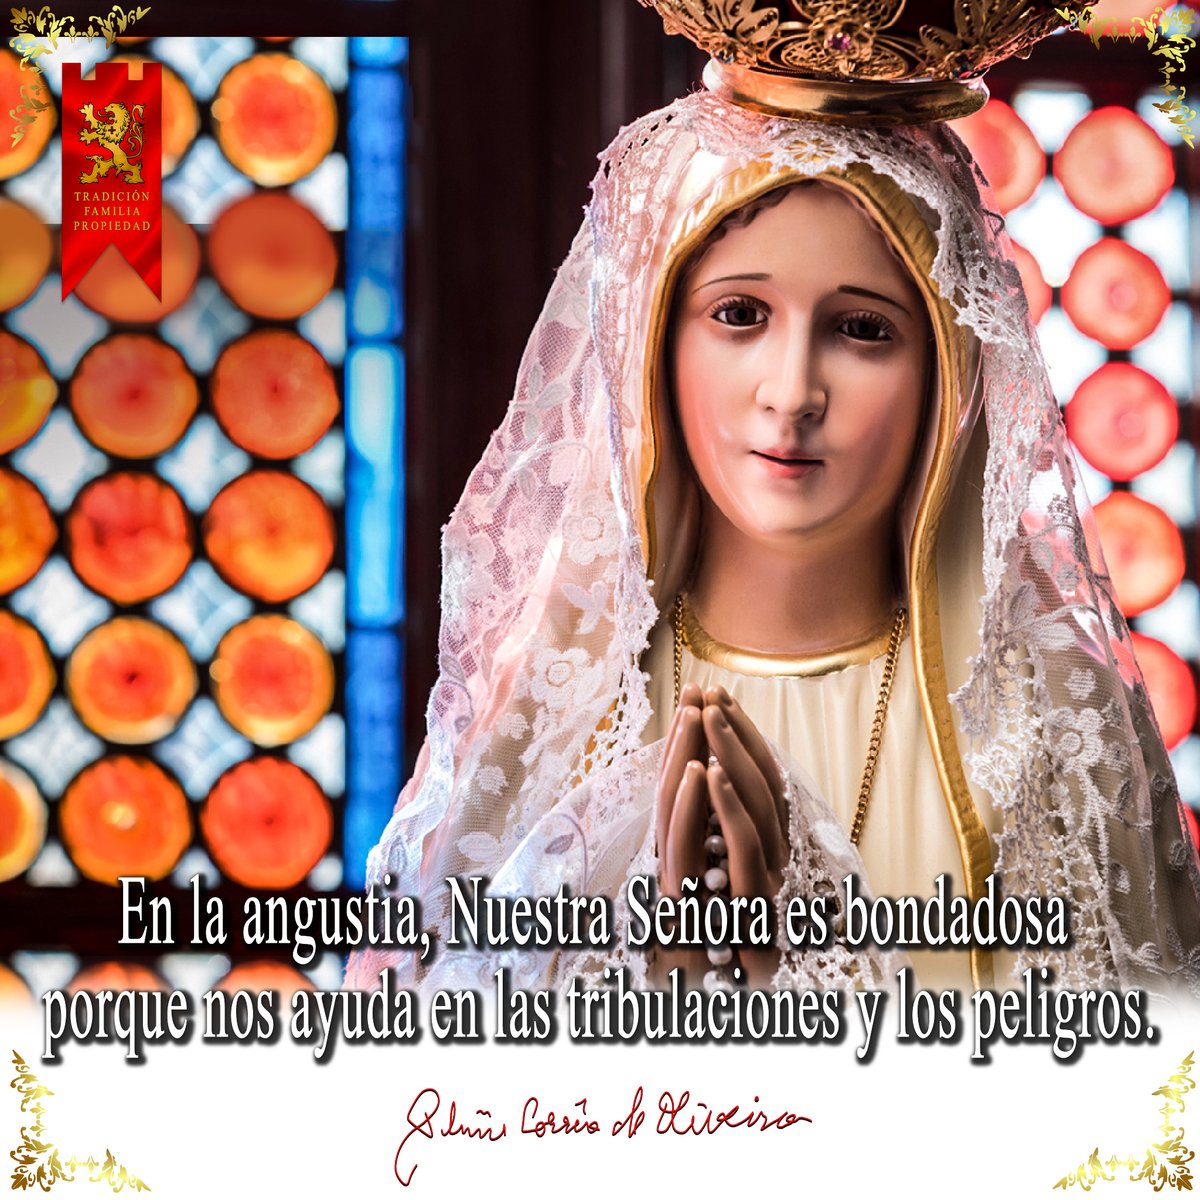 En las angustias, Nuestra Señora es bondadosa

#Virgenmaria #catolica #frases #TFP #Ecuador